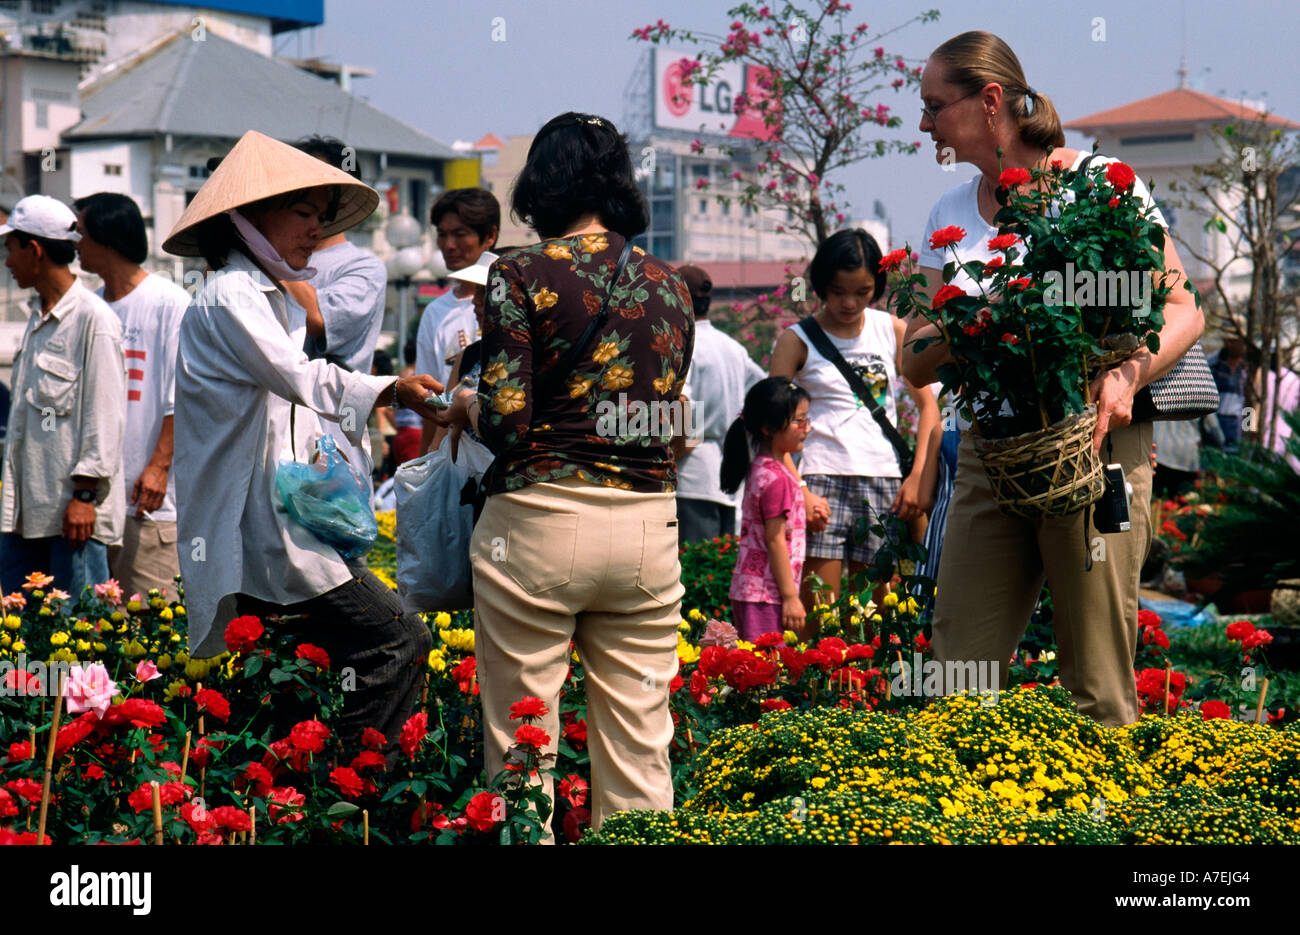 1 févr. 2003 - L'achat de tourisme à pot de fleurs le marché aux fleurs près de l'hôtel de ville de Saigon Banque D'Images